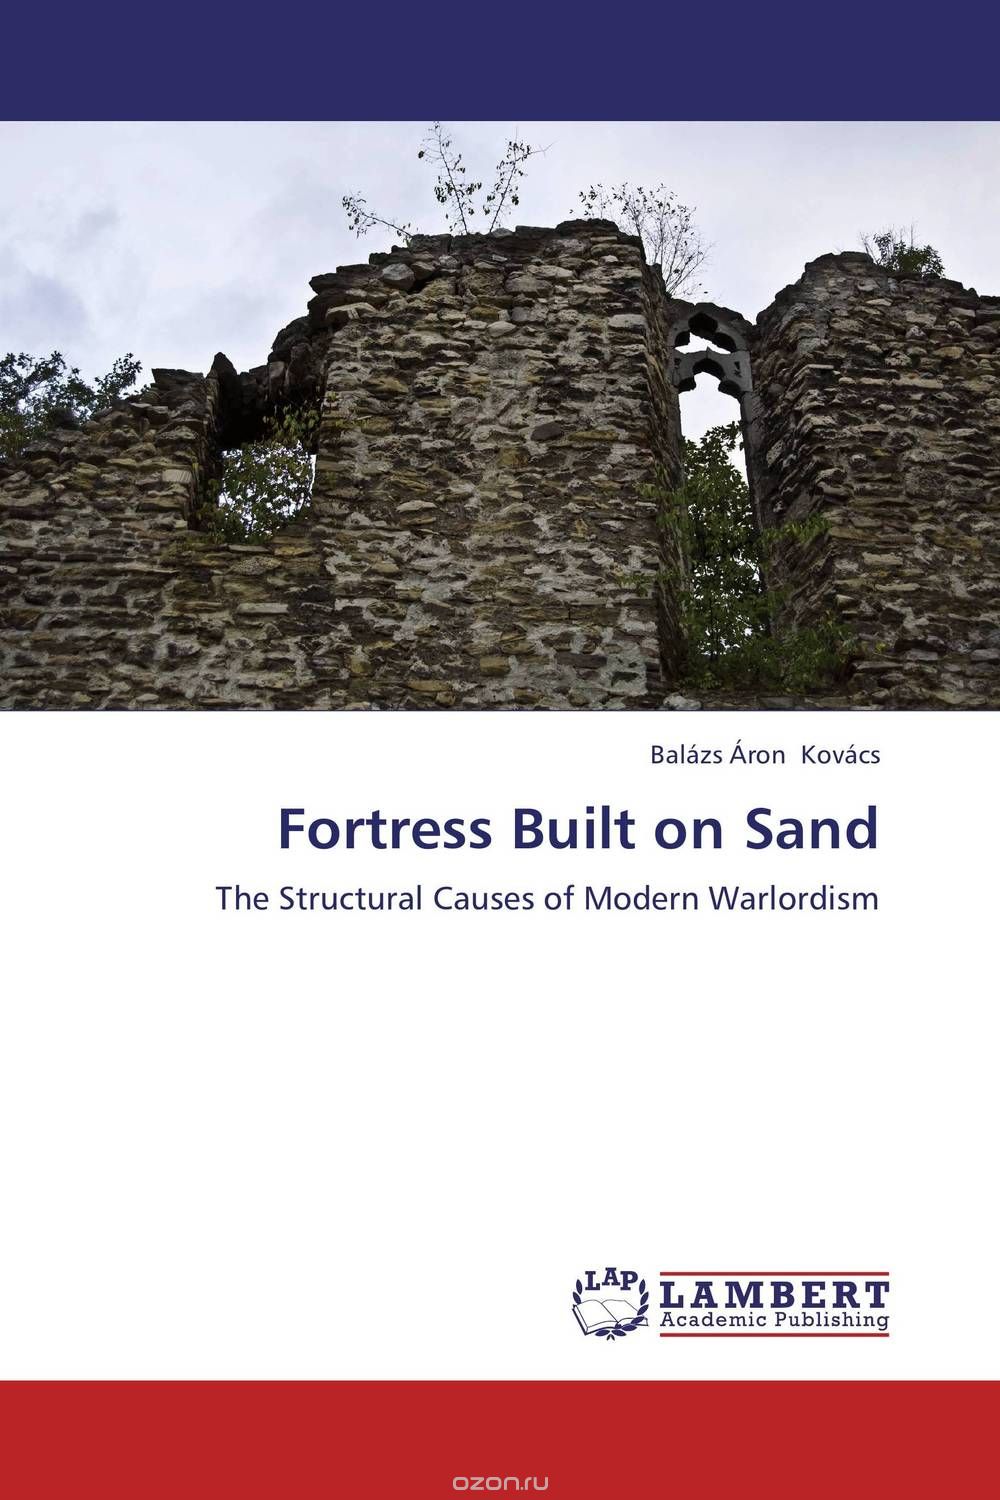 Скачать книгу "Fortress Built on Sand"